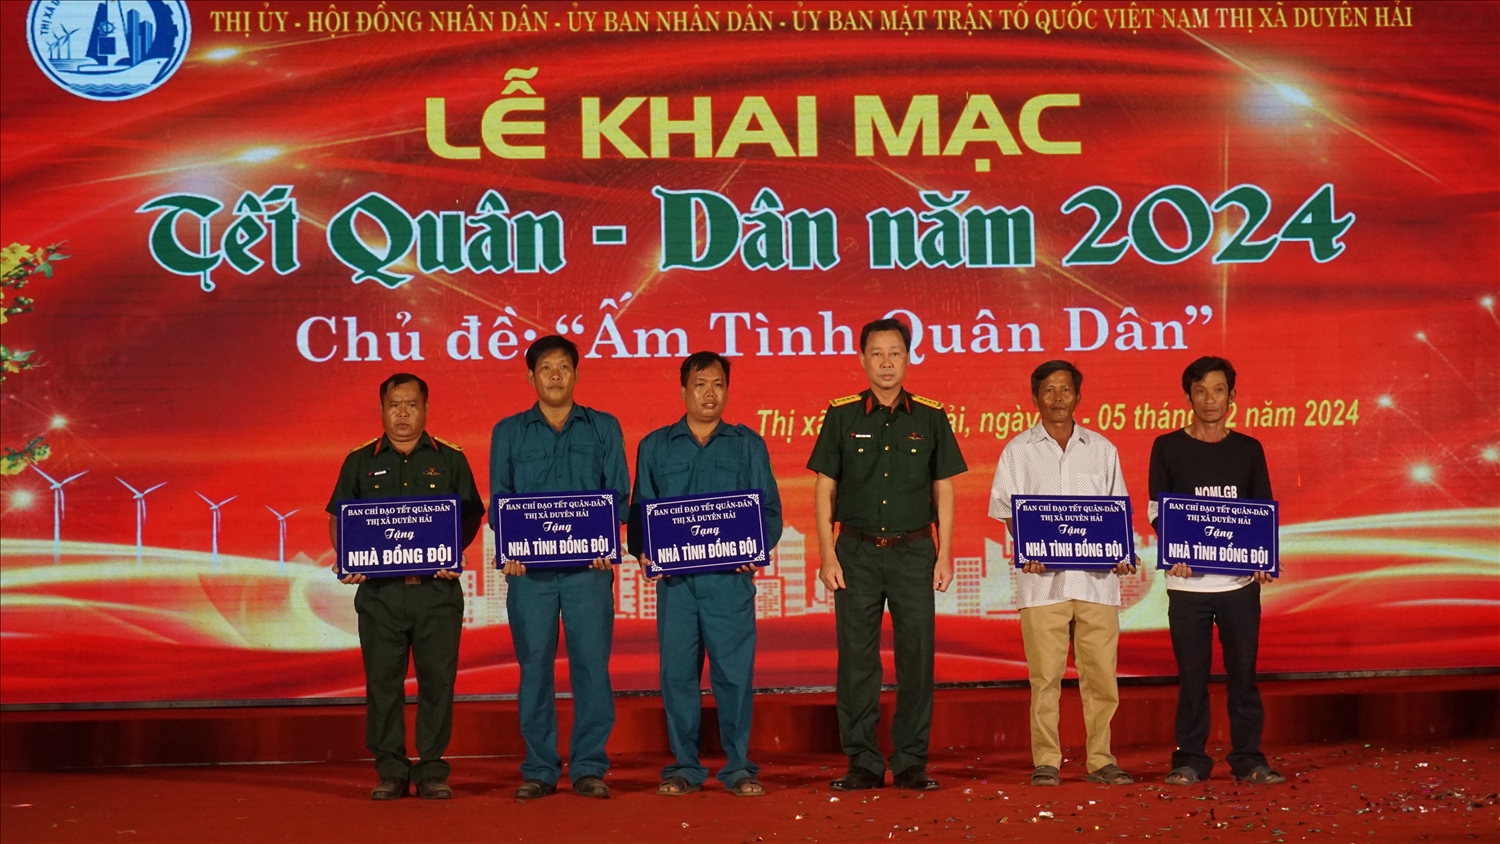 Đại tá Trương Thanh Phong, Chỉ huy trưởng Bộ Chỉ huy quân sự tỉnh Trà Vinh trao bảng tượng trưng nhà đồng đội tại buổi khai mạc 